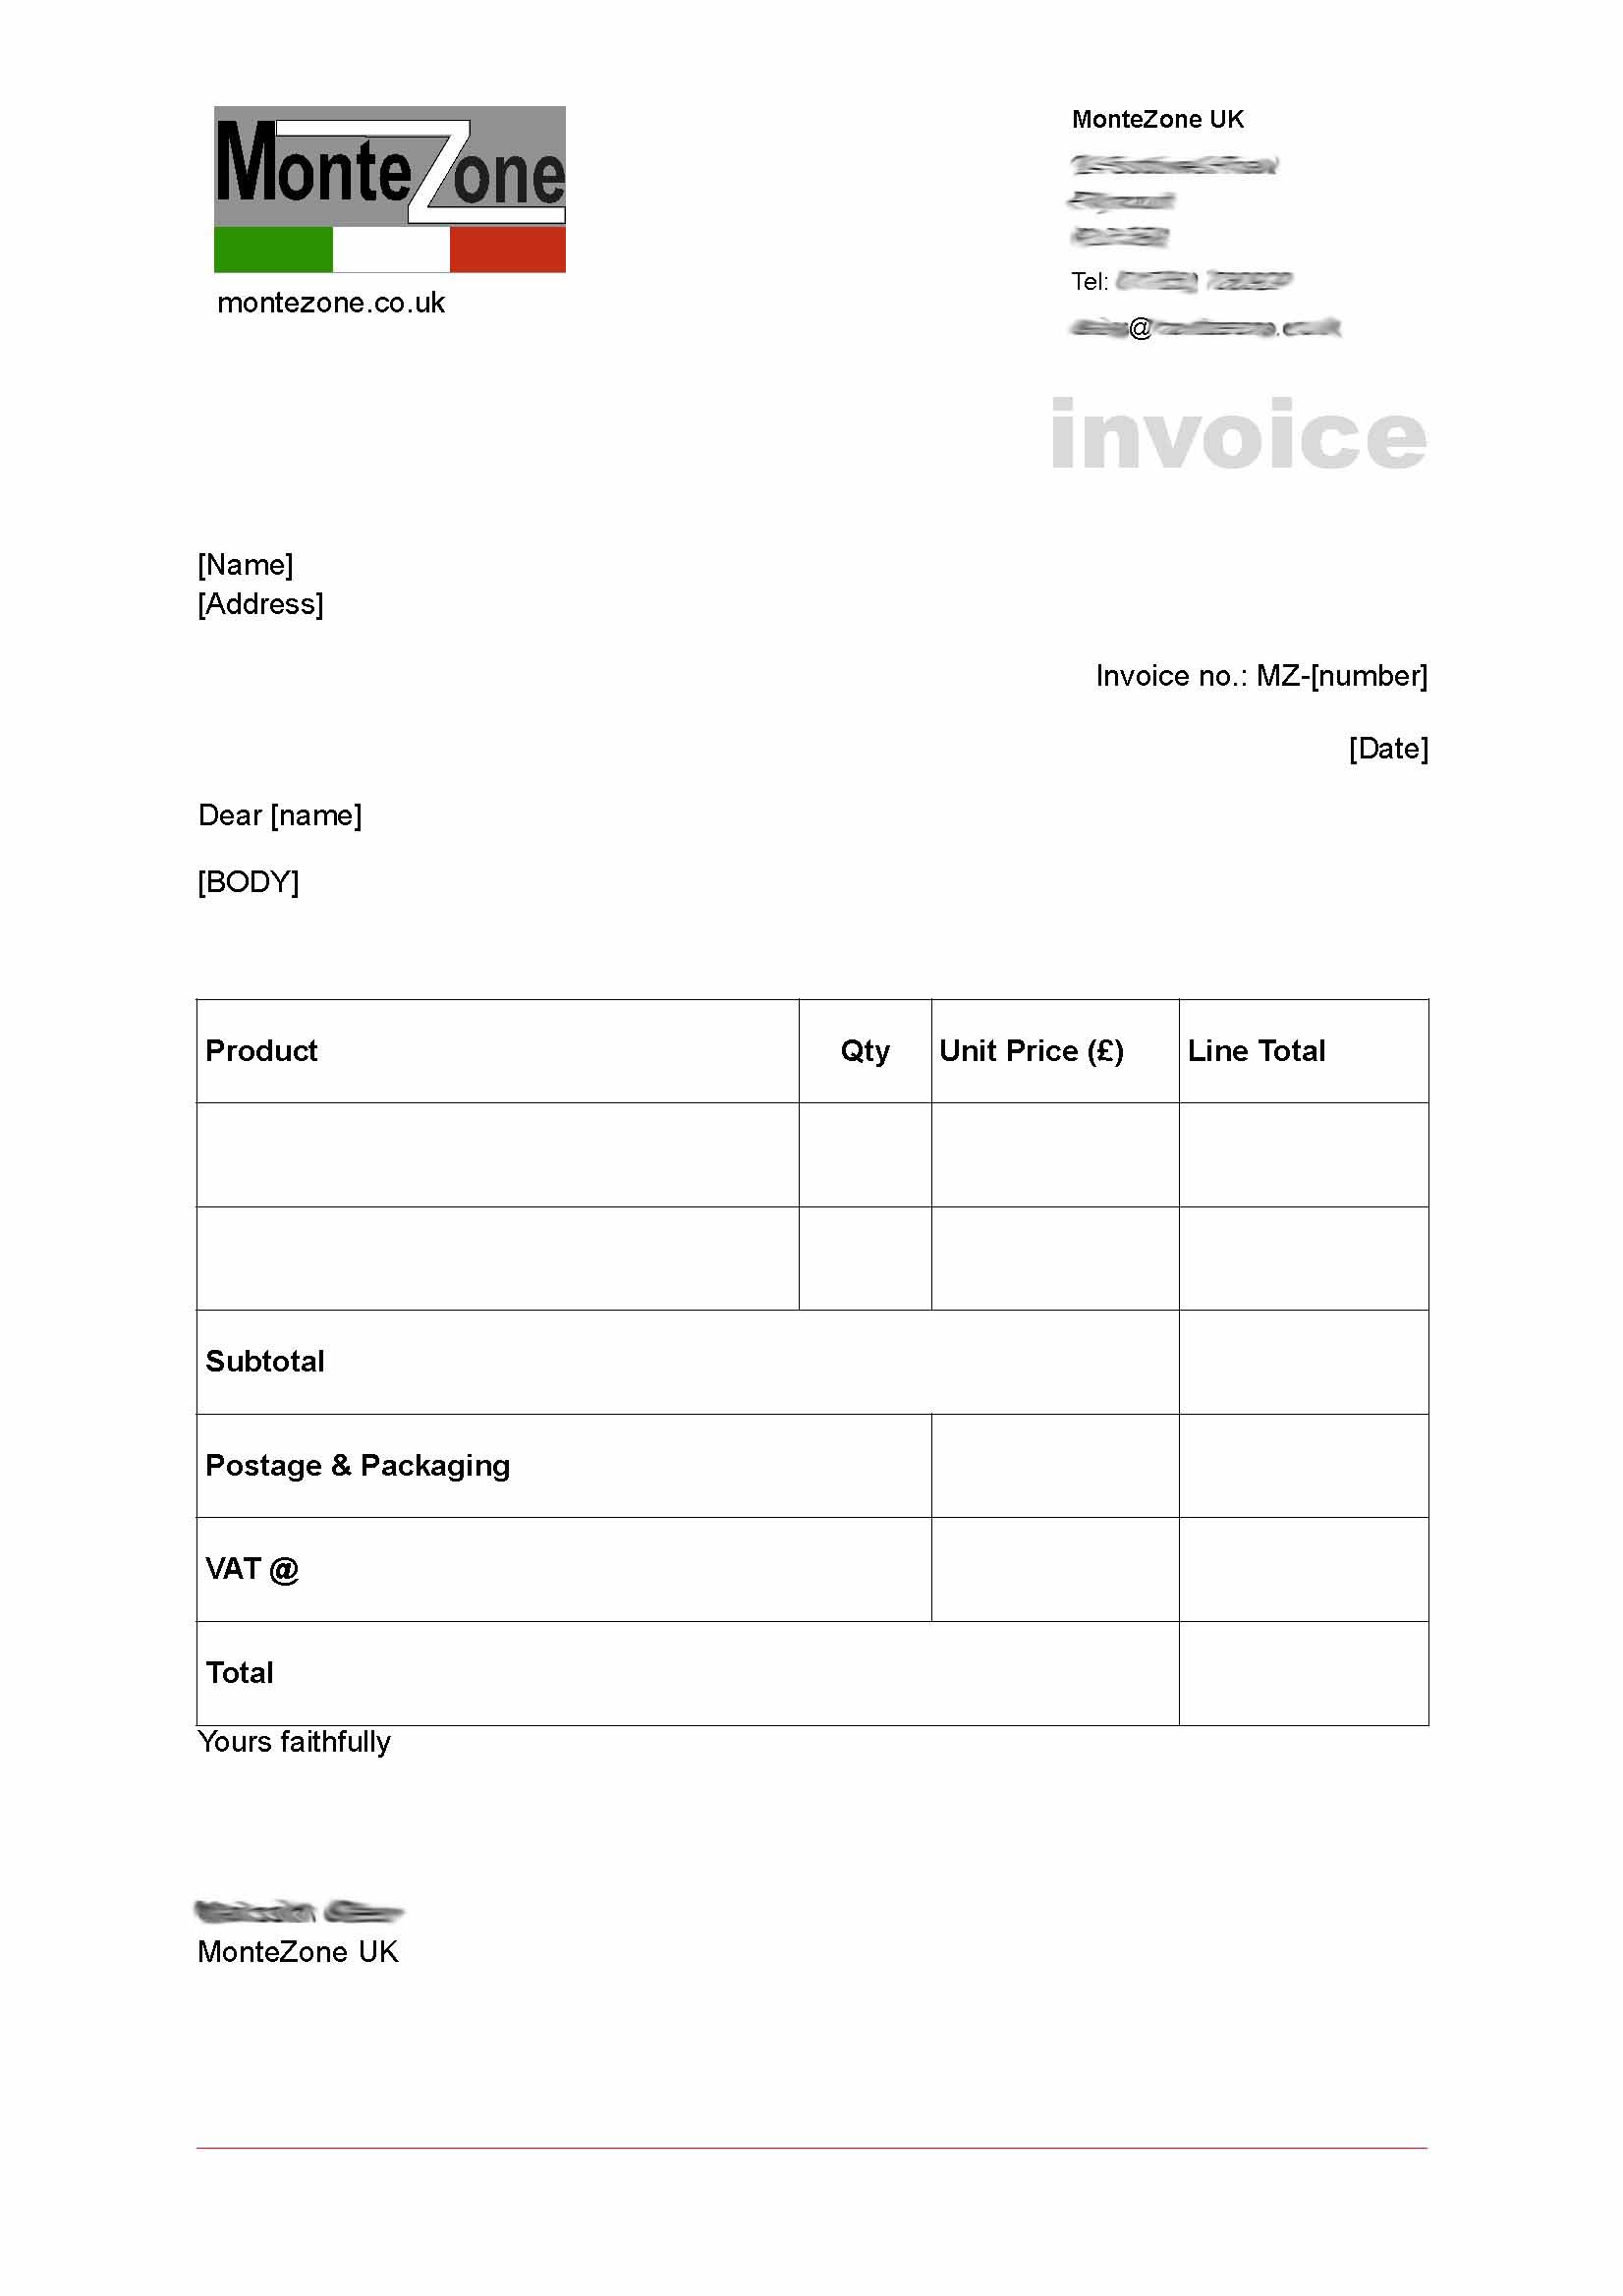 Montezone UK stationery (invoice)